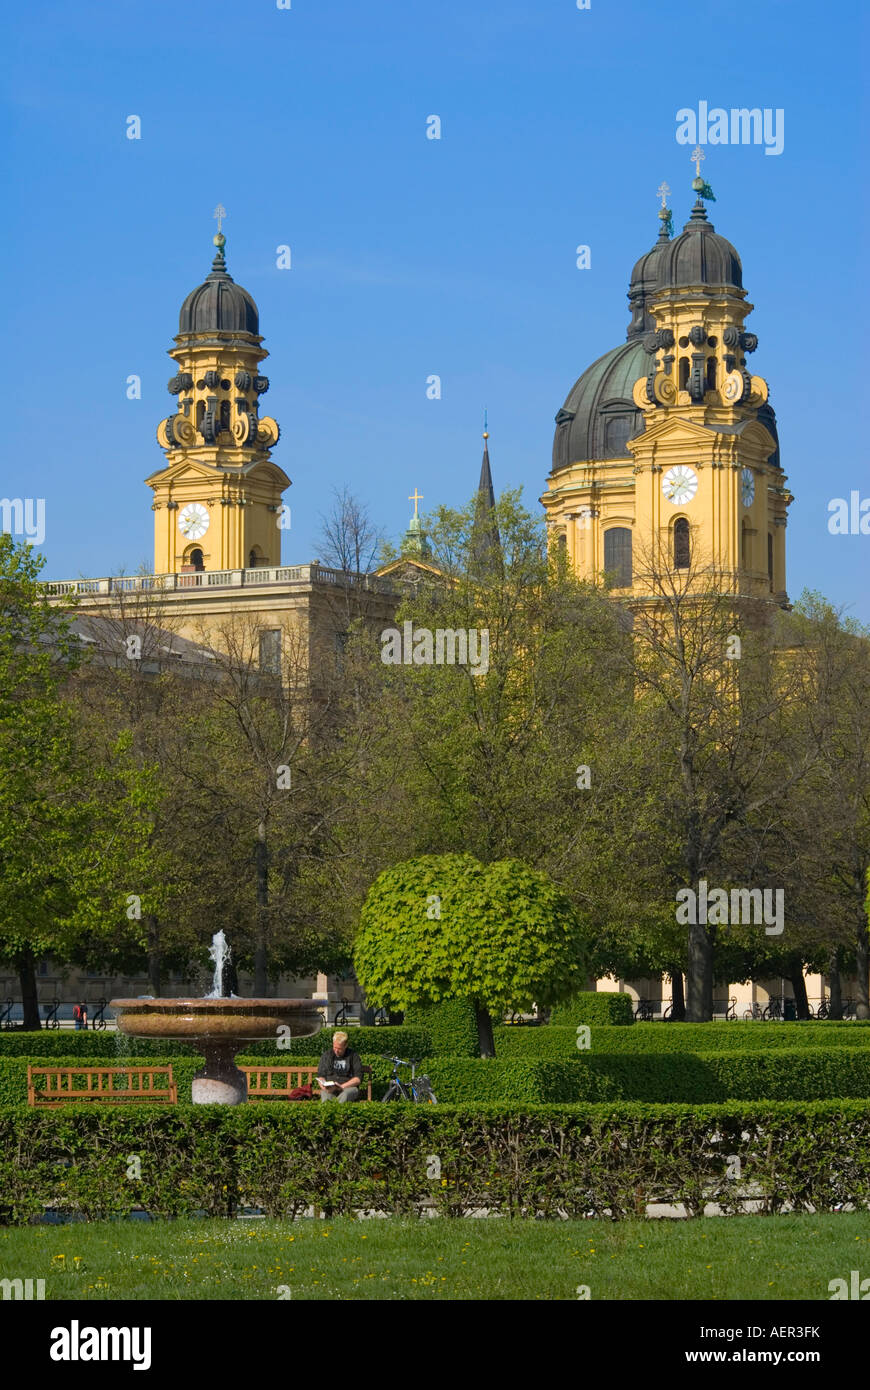 München, Bayern, Deutschland. Theatinerkirche (Kirche St. Cajetan - 1768) Kuppel und Türme vom Hofgarten aus gesehen Stockfoto